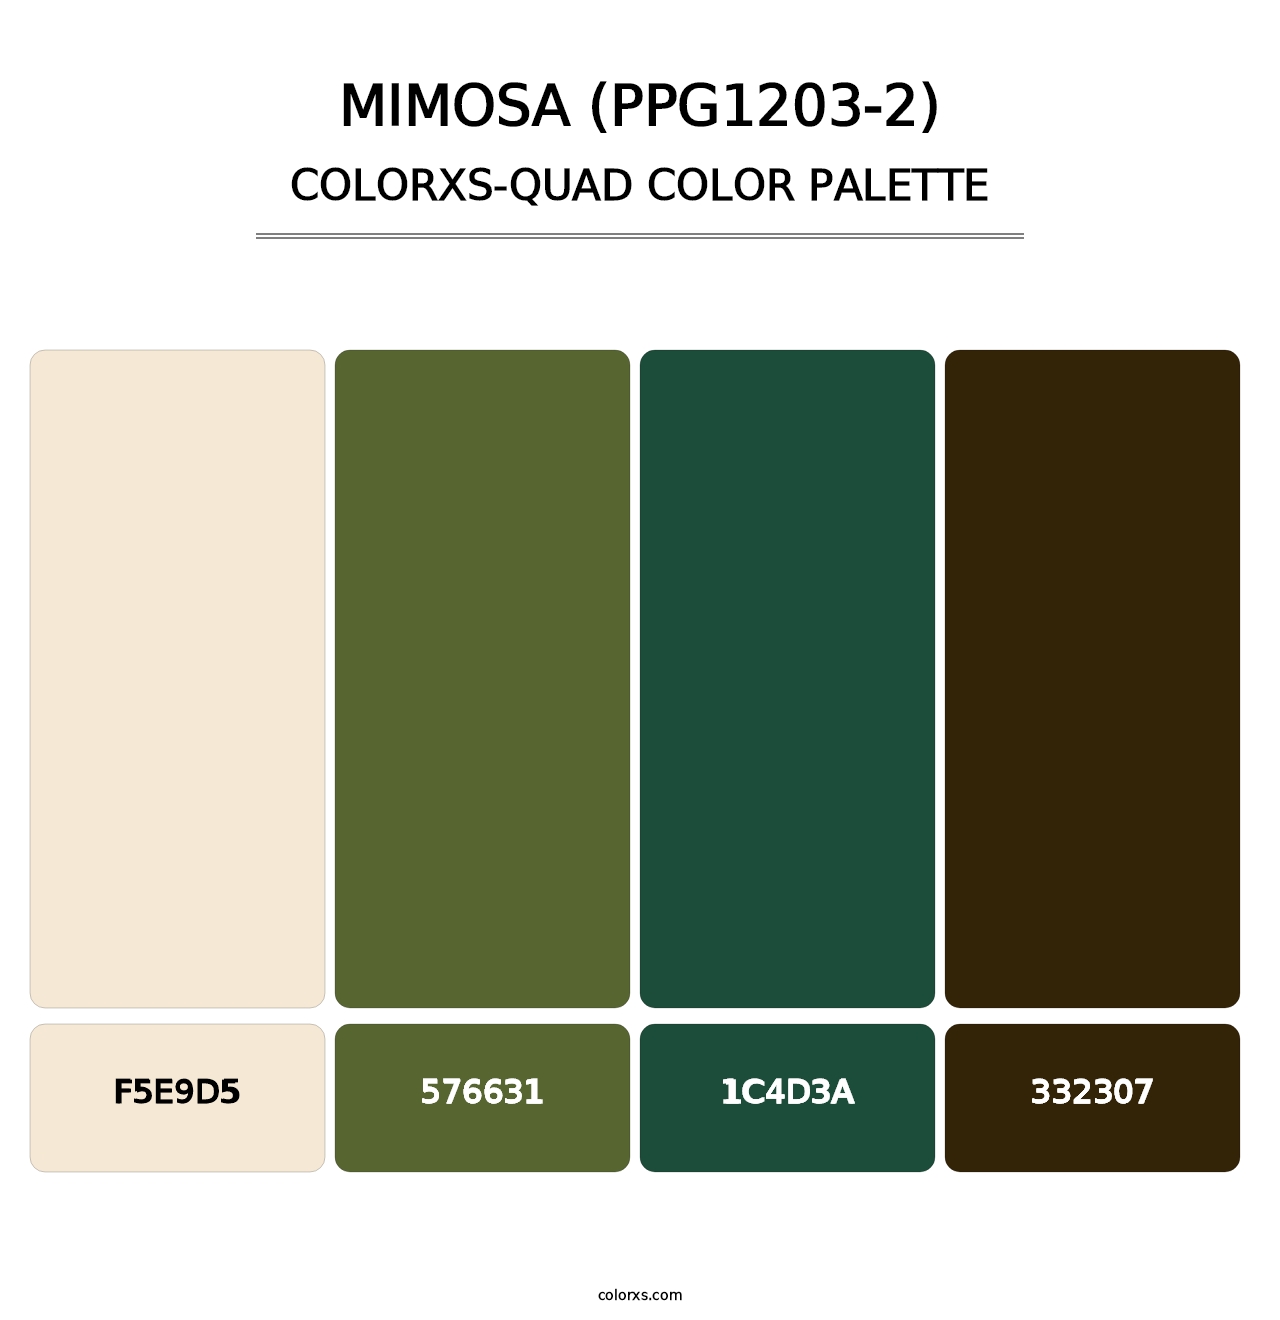 Mimosa (PPG1203-2) - Colorxs Quad Palette